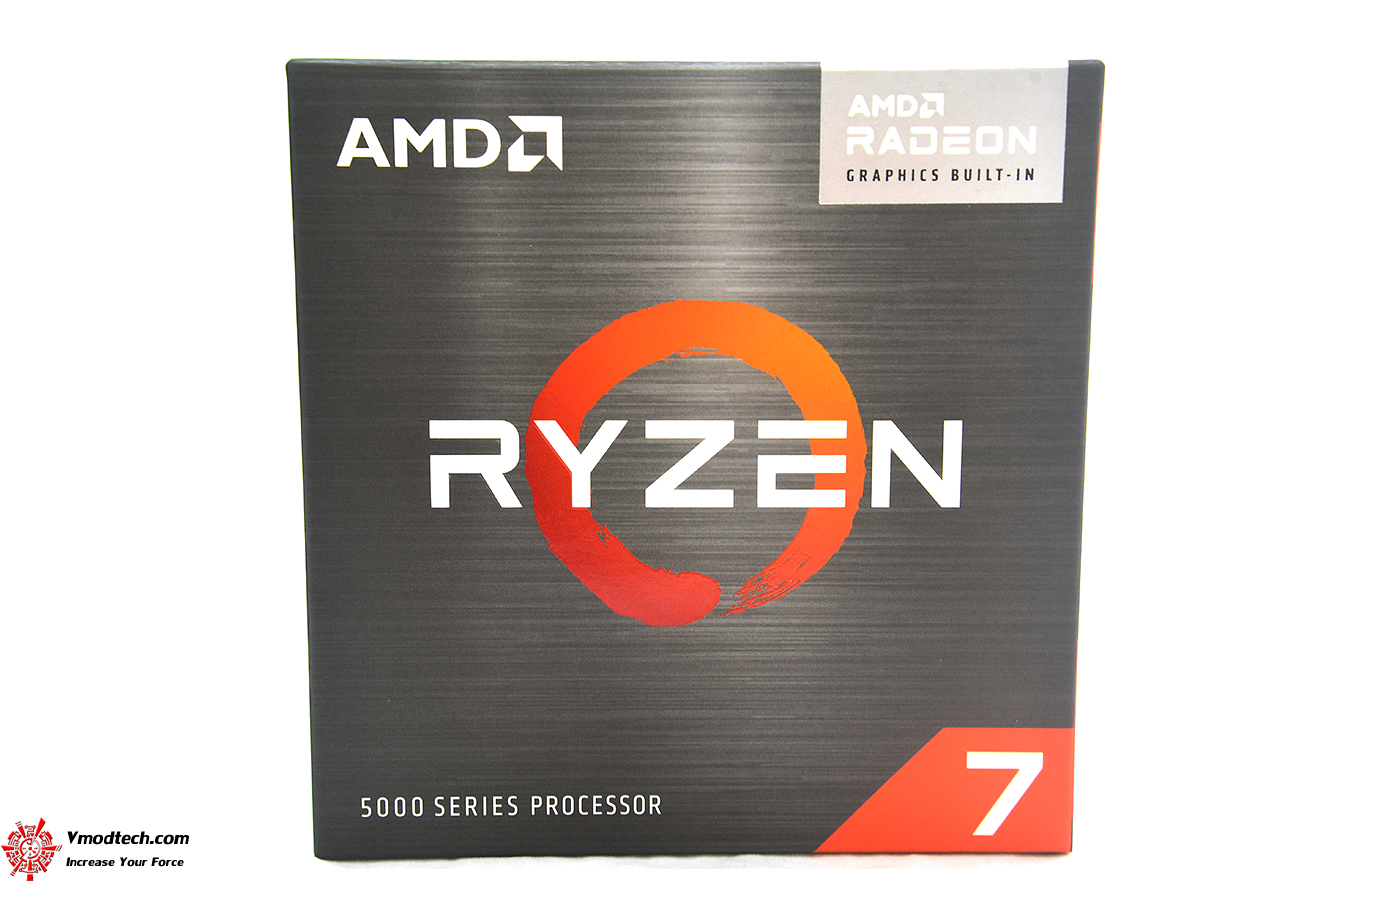 dsc 6938 AMD RYZEN 7 5700G PROCESSOR REVIEW